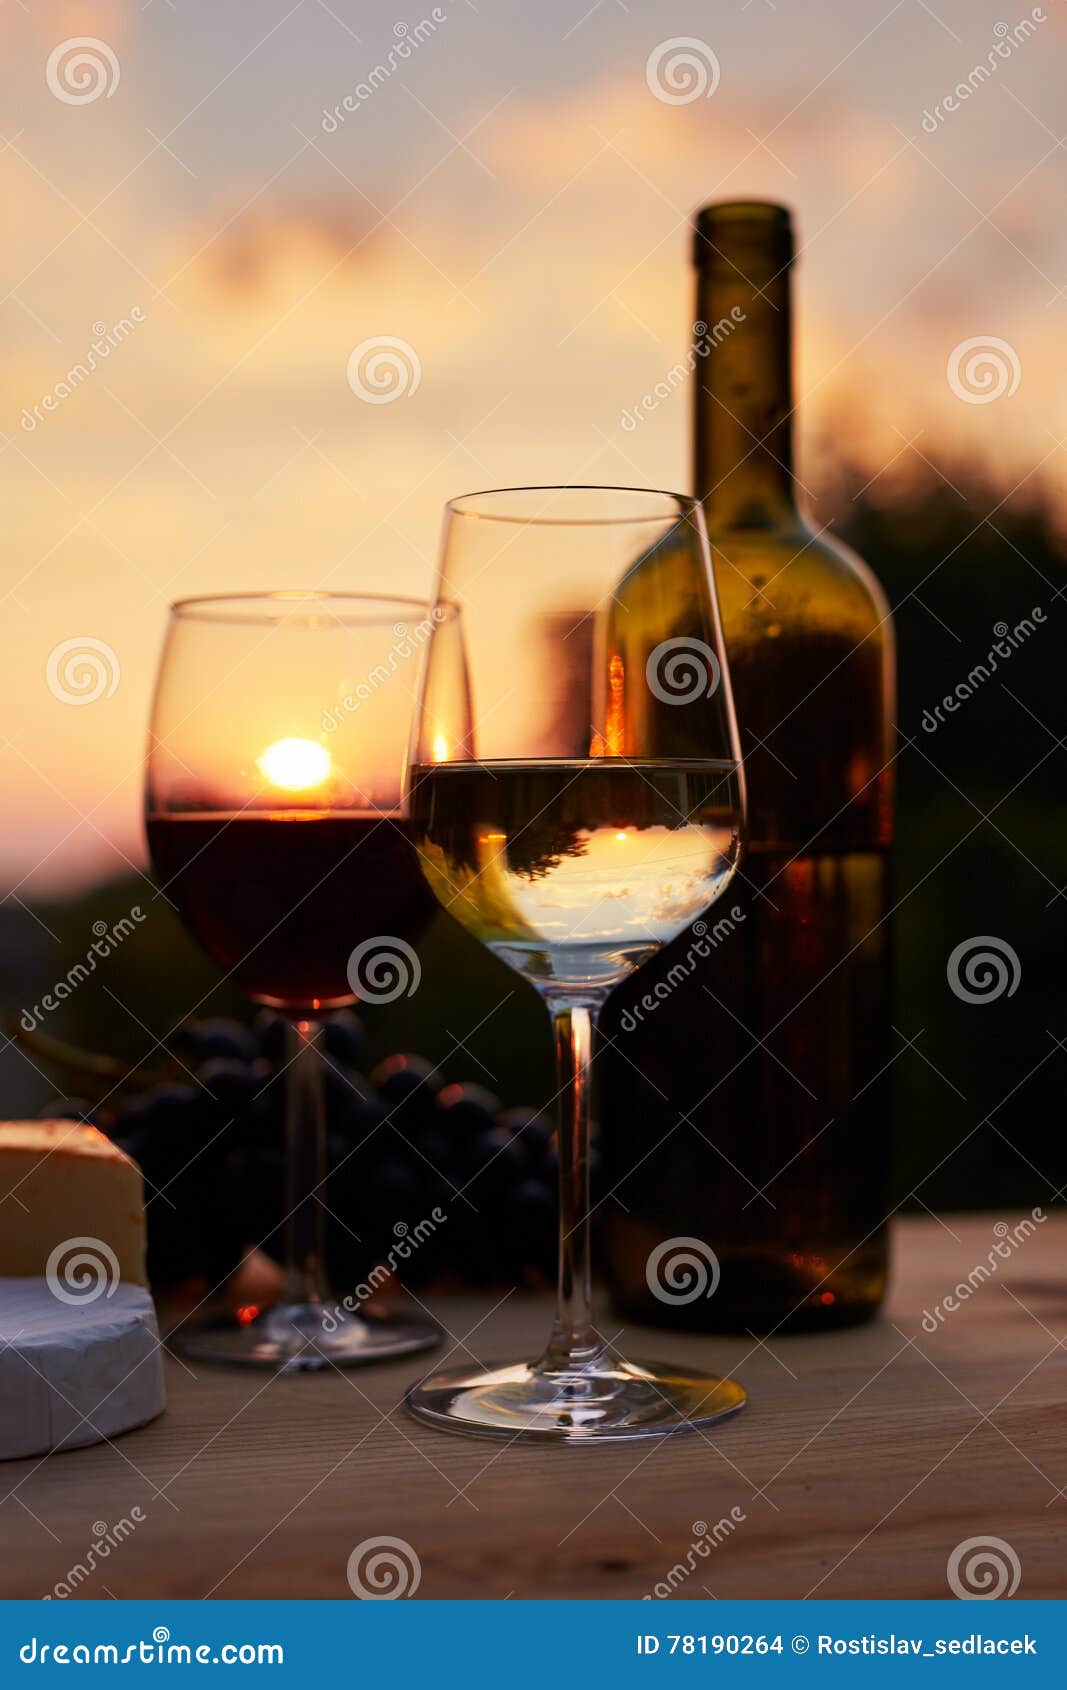 Συγκρατημένη εικόνα, δύο ποτήρια του κρασιού Στοκ Εικόνες - εικόνα από  alcoholisms: 78190264